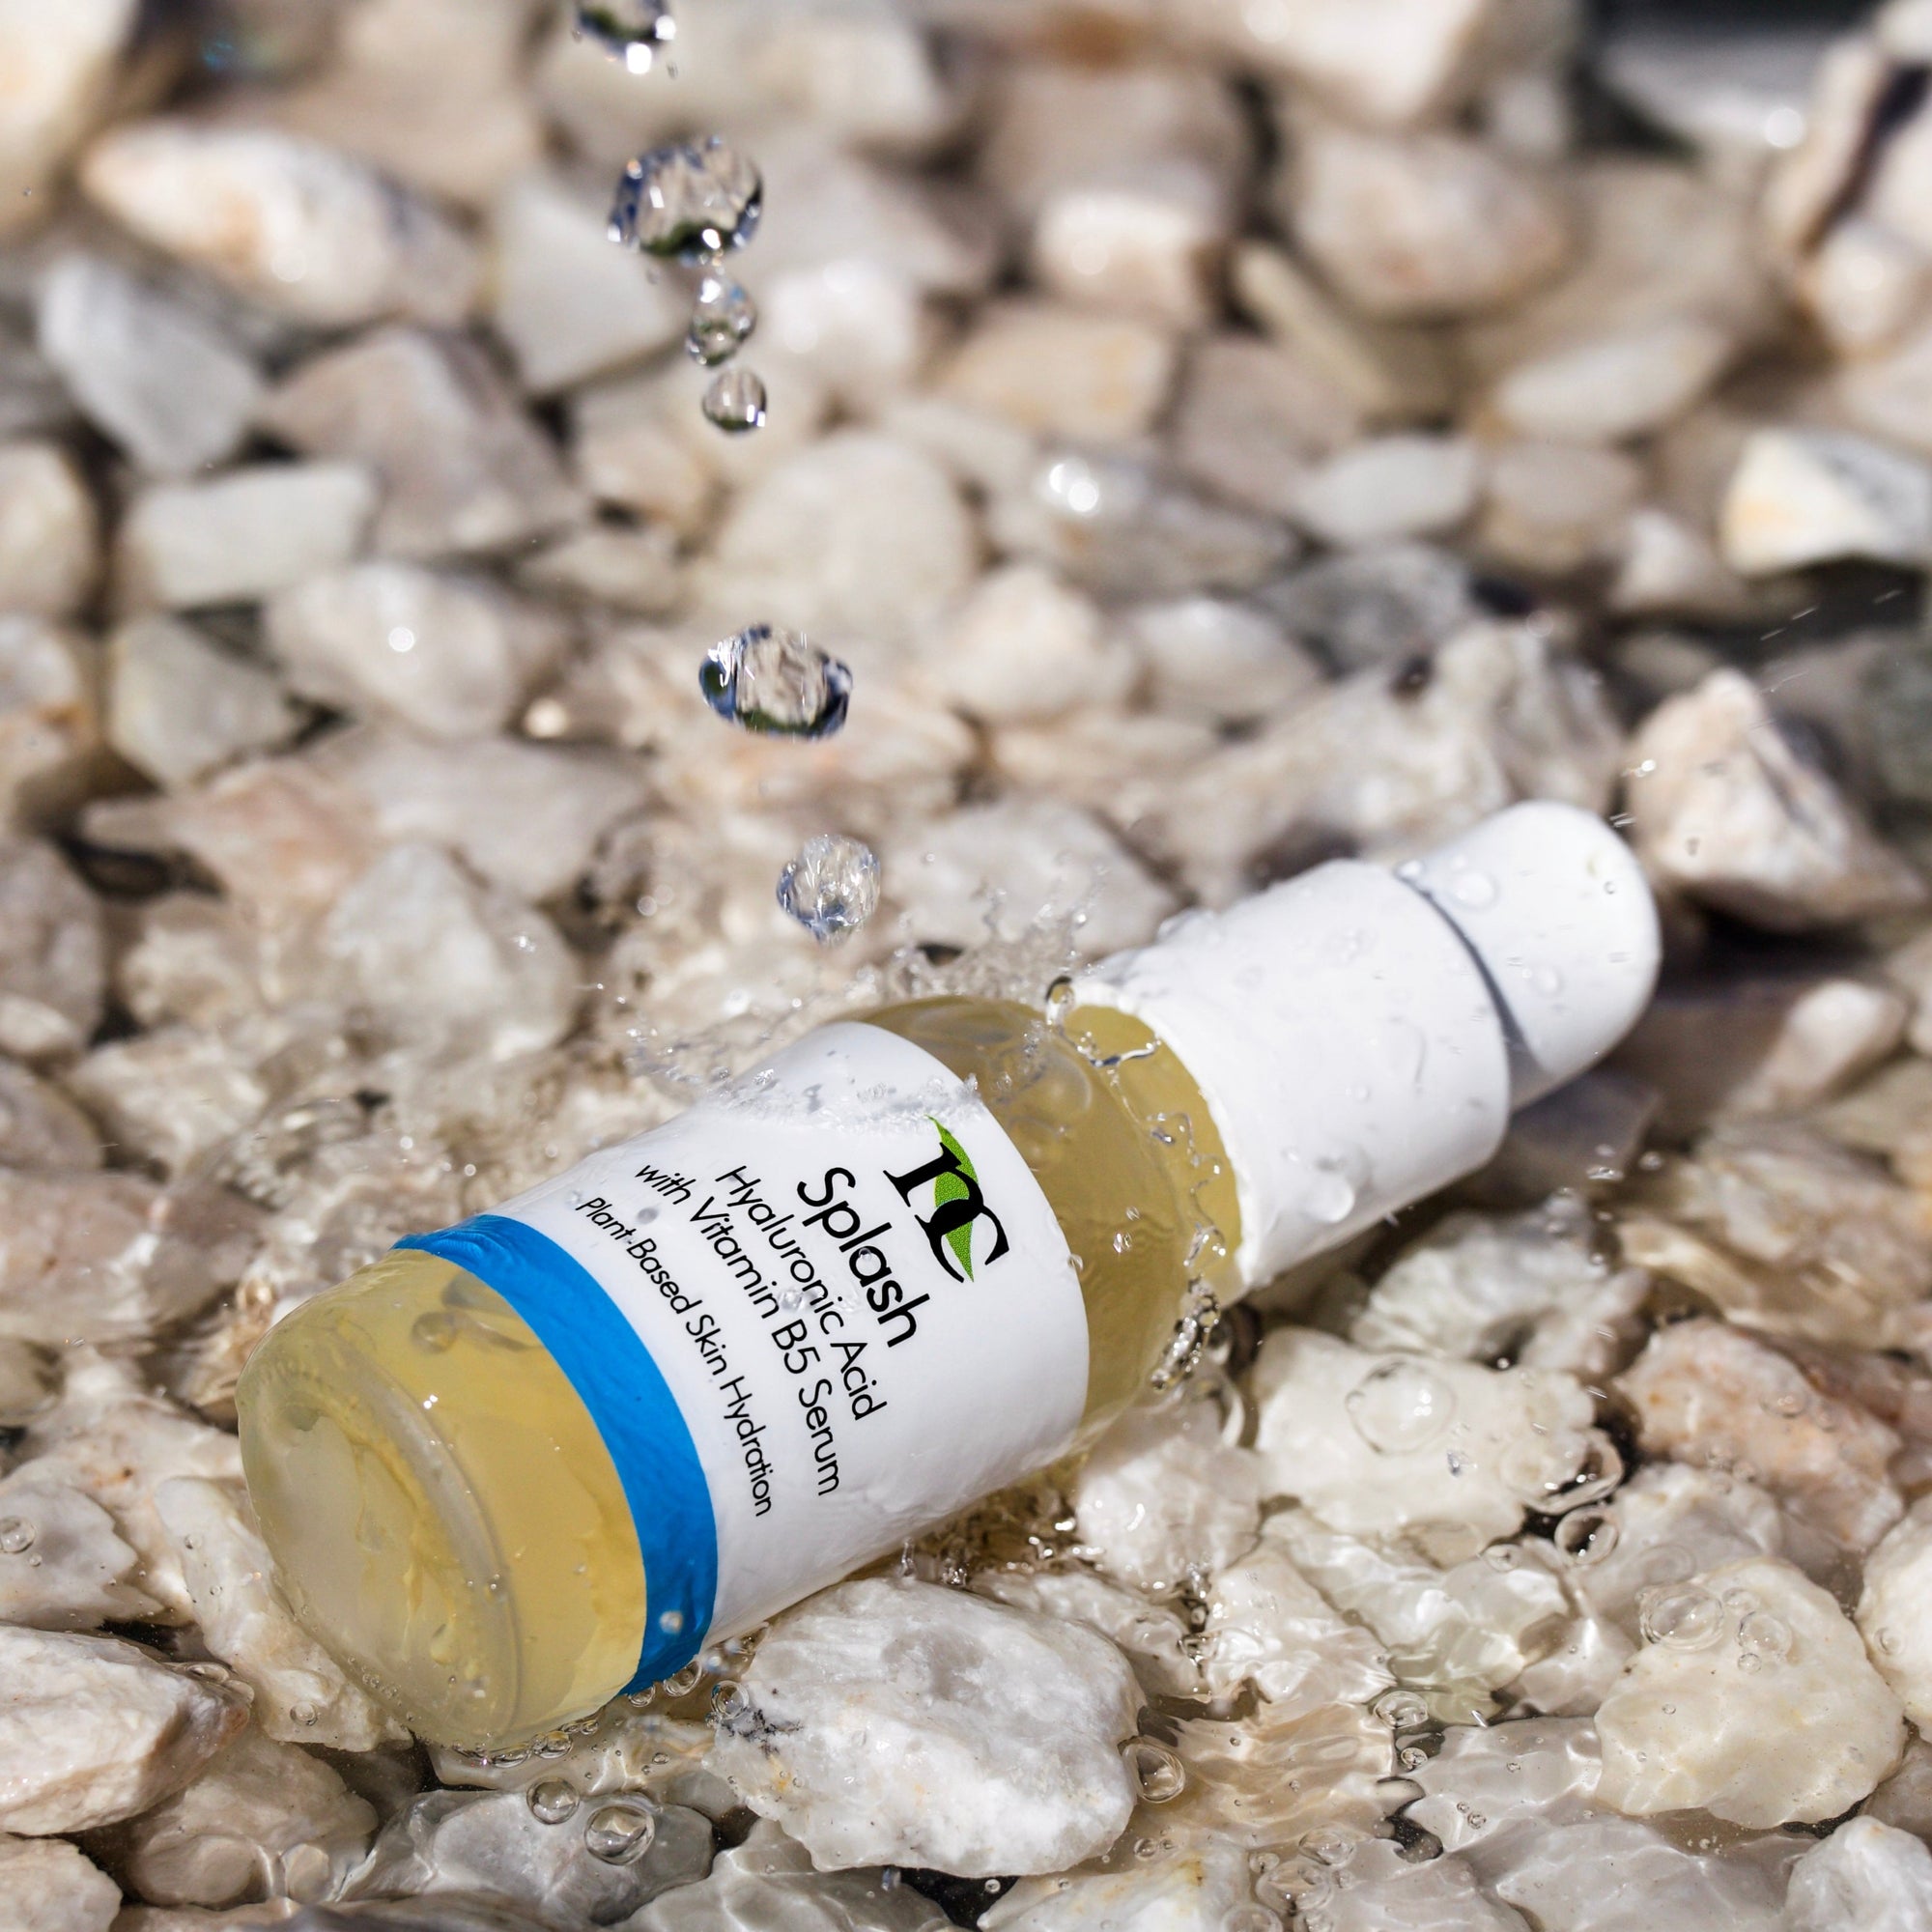 Splash Hyaluronic Acid Serum product photo on white background